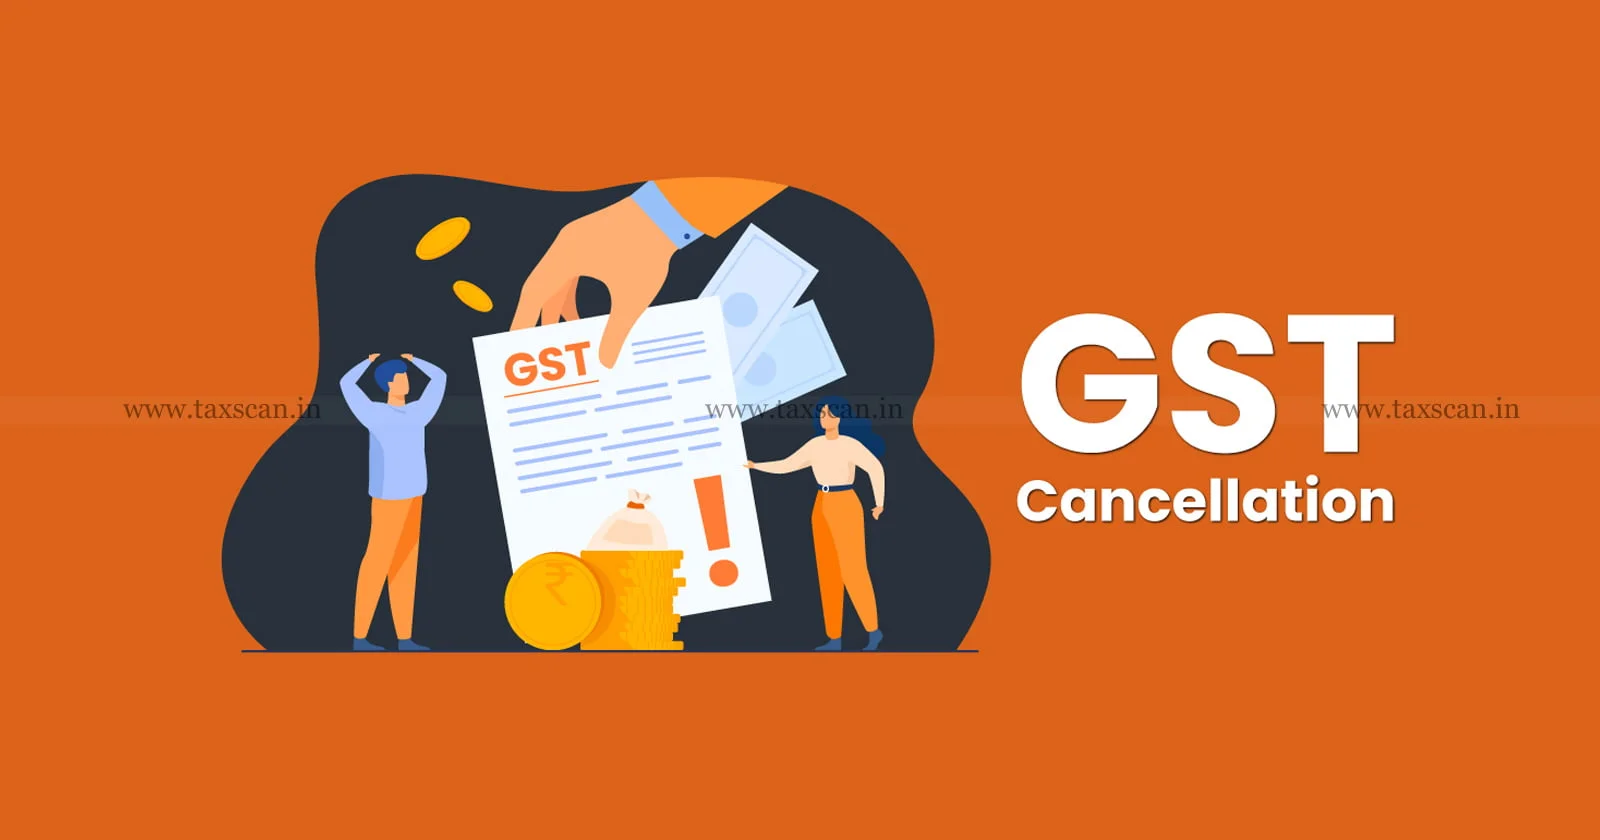 Delhi High Court - GST - GST Cancellation Order - SCN - Show Cause Notice - taxscan